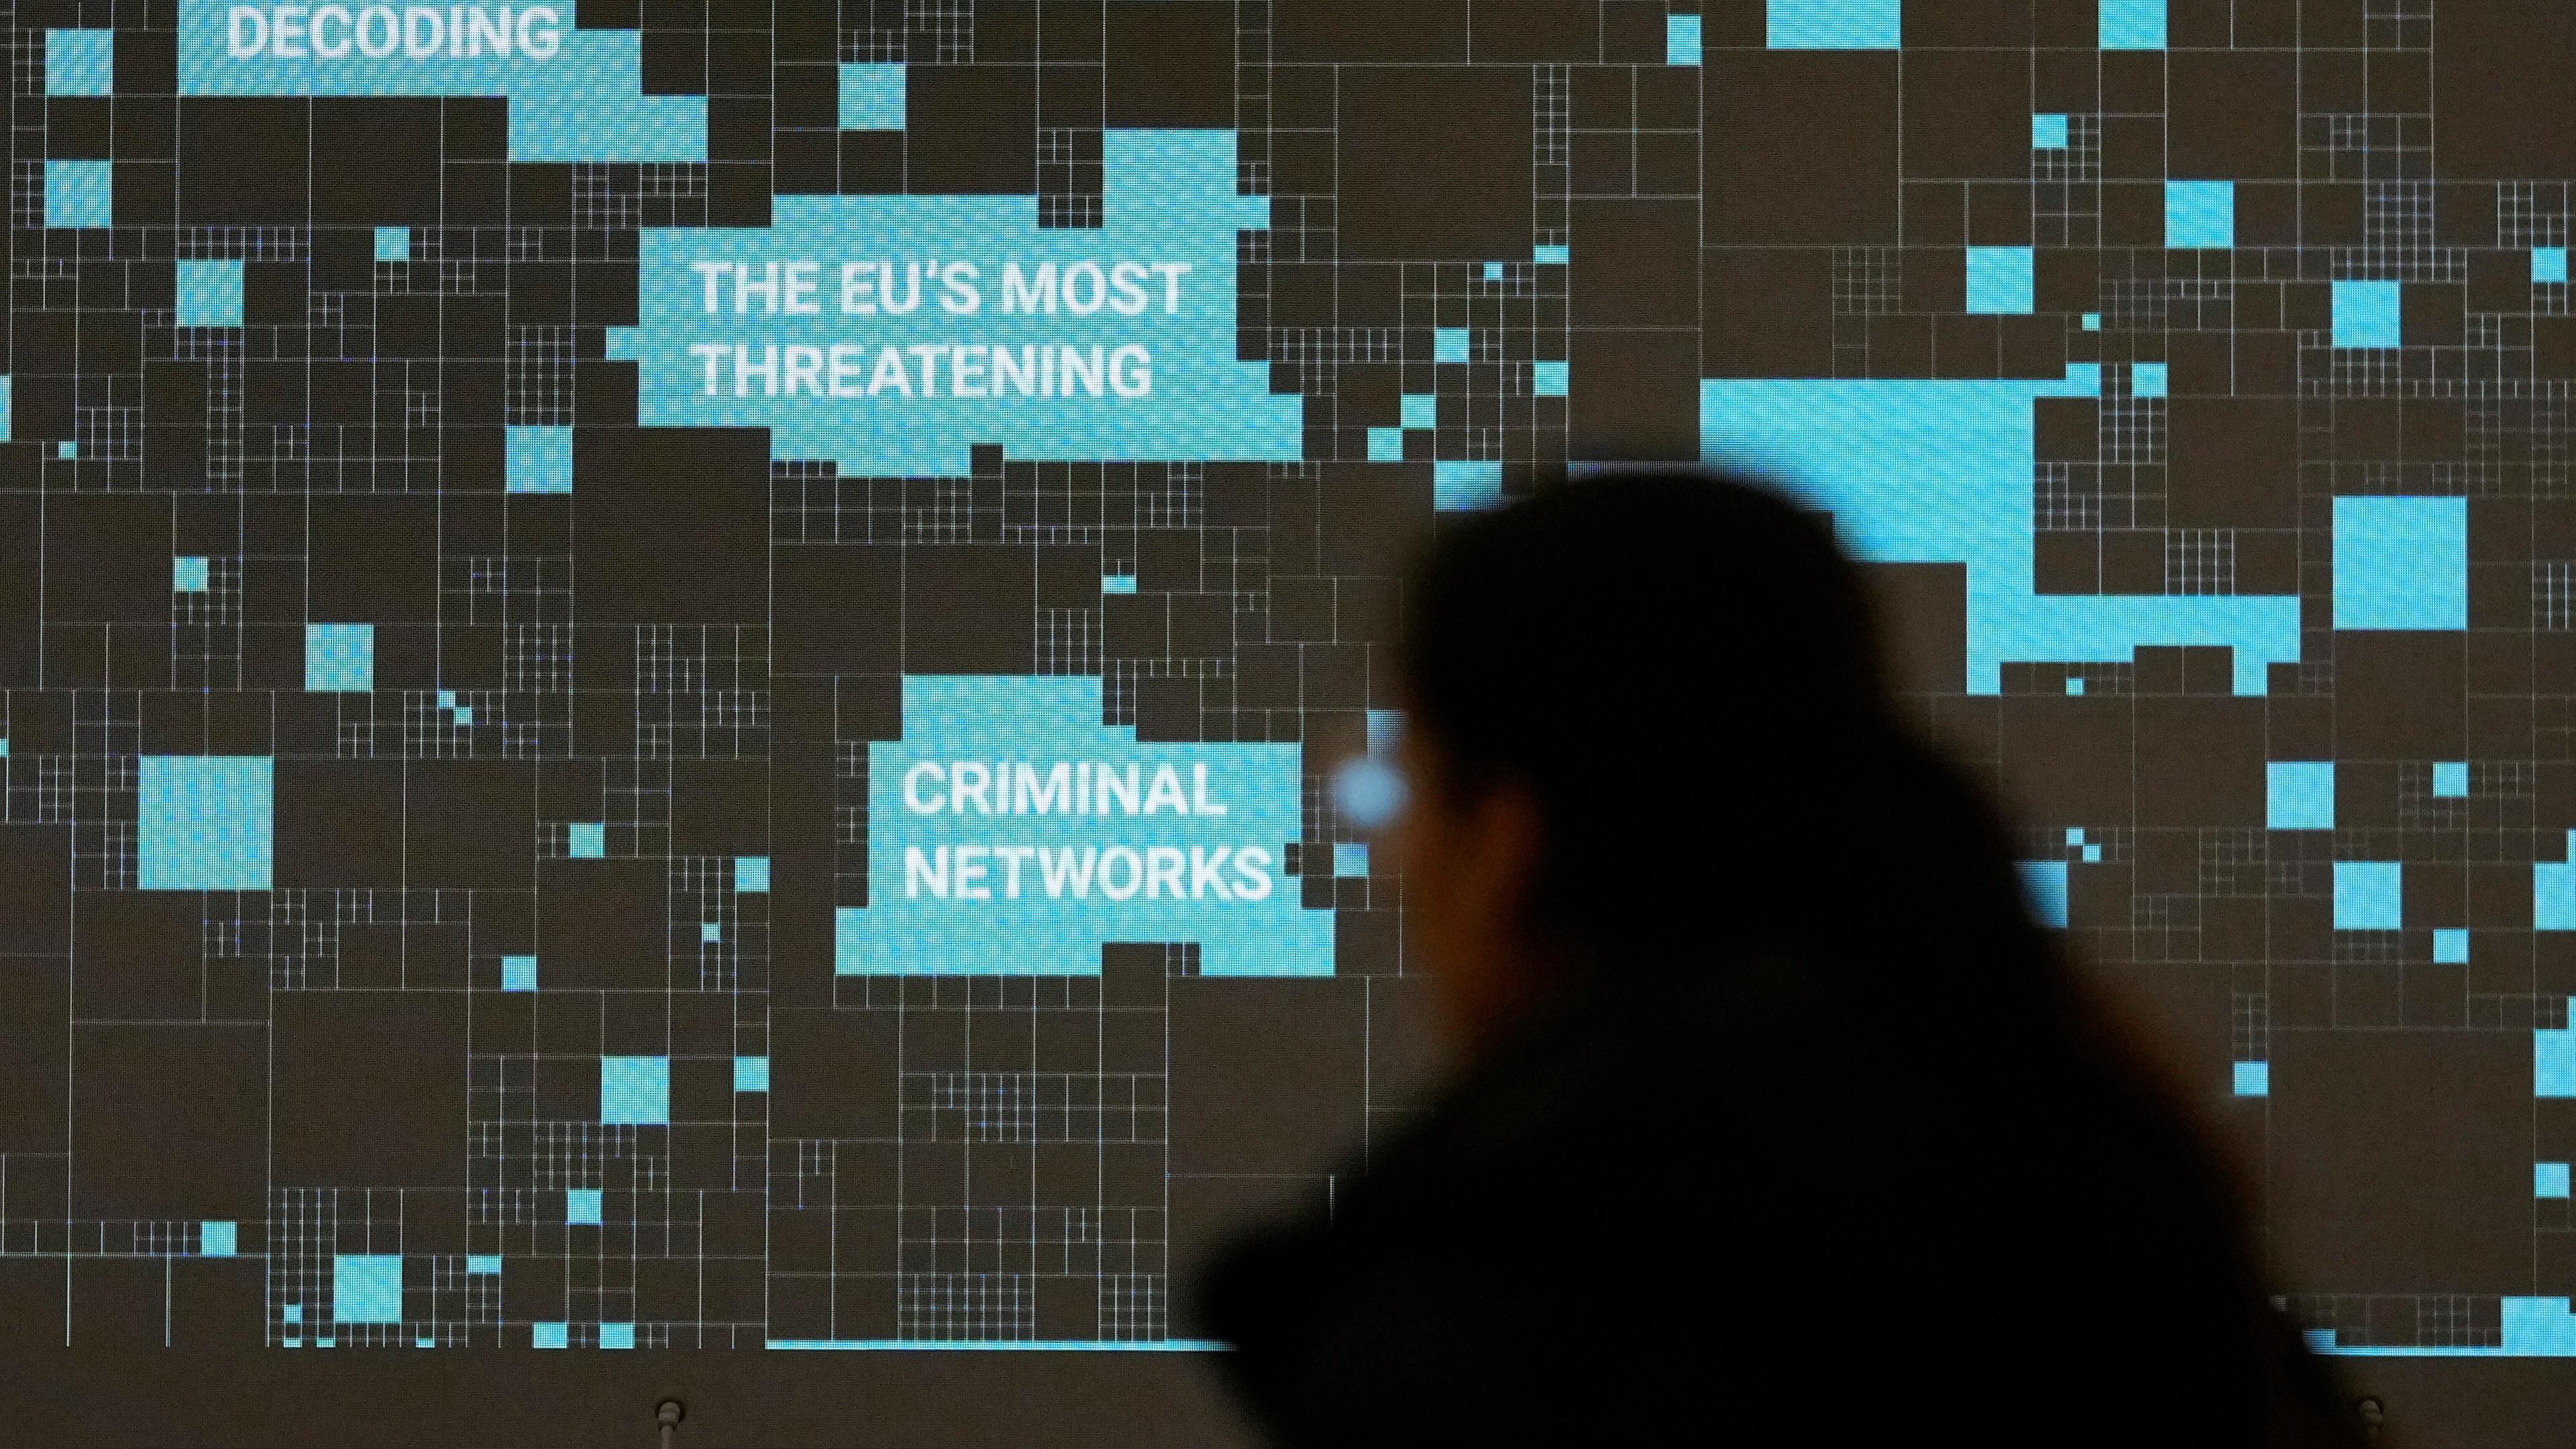 Medienkonferenz, auf der die Ergebnisse des Europol-Berichts über die bedrohlichsten kriminellen Netzwerke in der Europäischen Union vorgestellt werden in Brüssel am 05.04.2024.